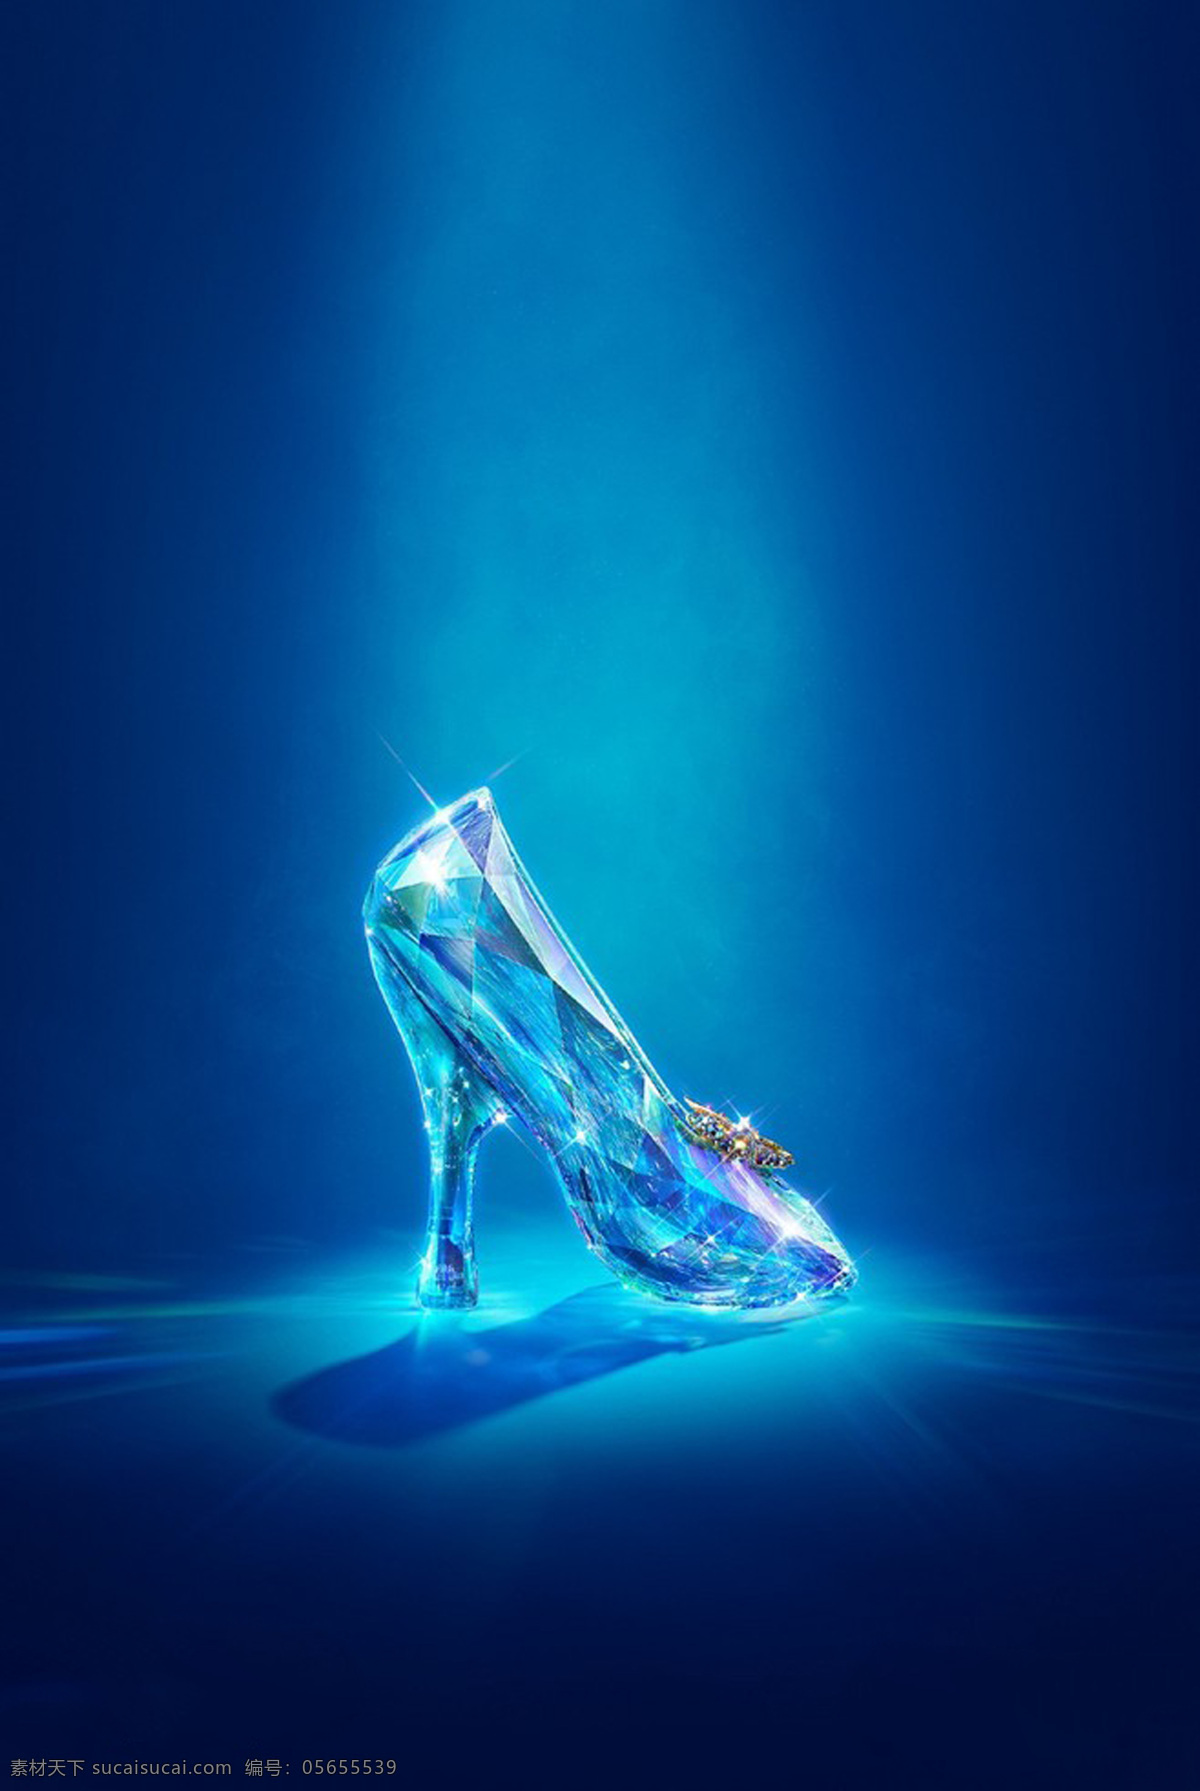 蓝色水晶鞋 蓝色 背景 水晶鞋 文艺 小清新 唯美 幻想 灯光 蓝光 简约 聚光灯 聚光 焦点 闪耀 闪亮 艺术文艺类